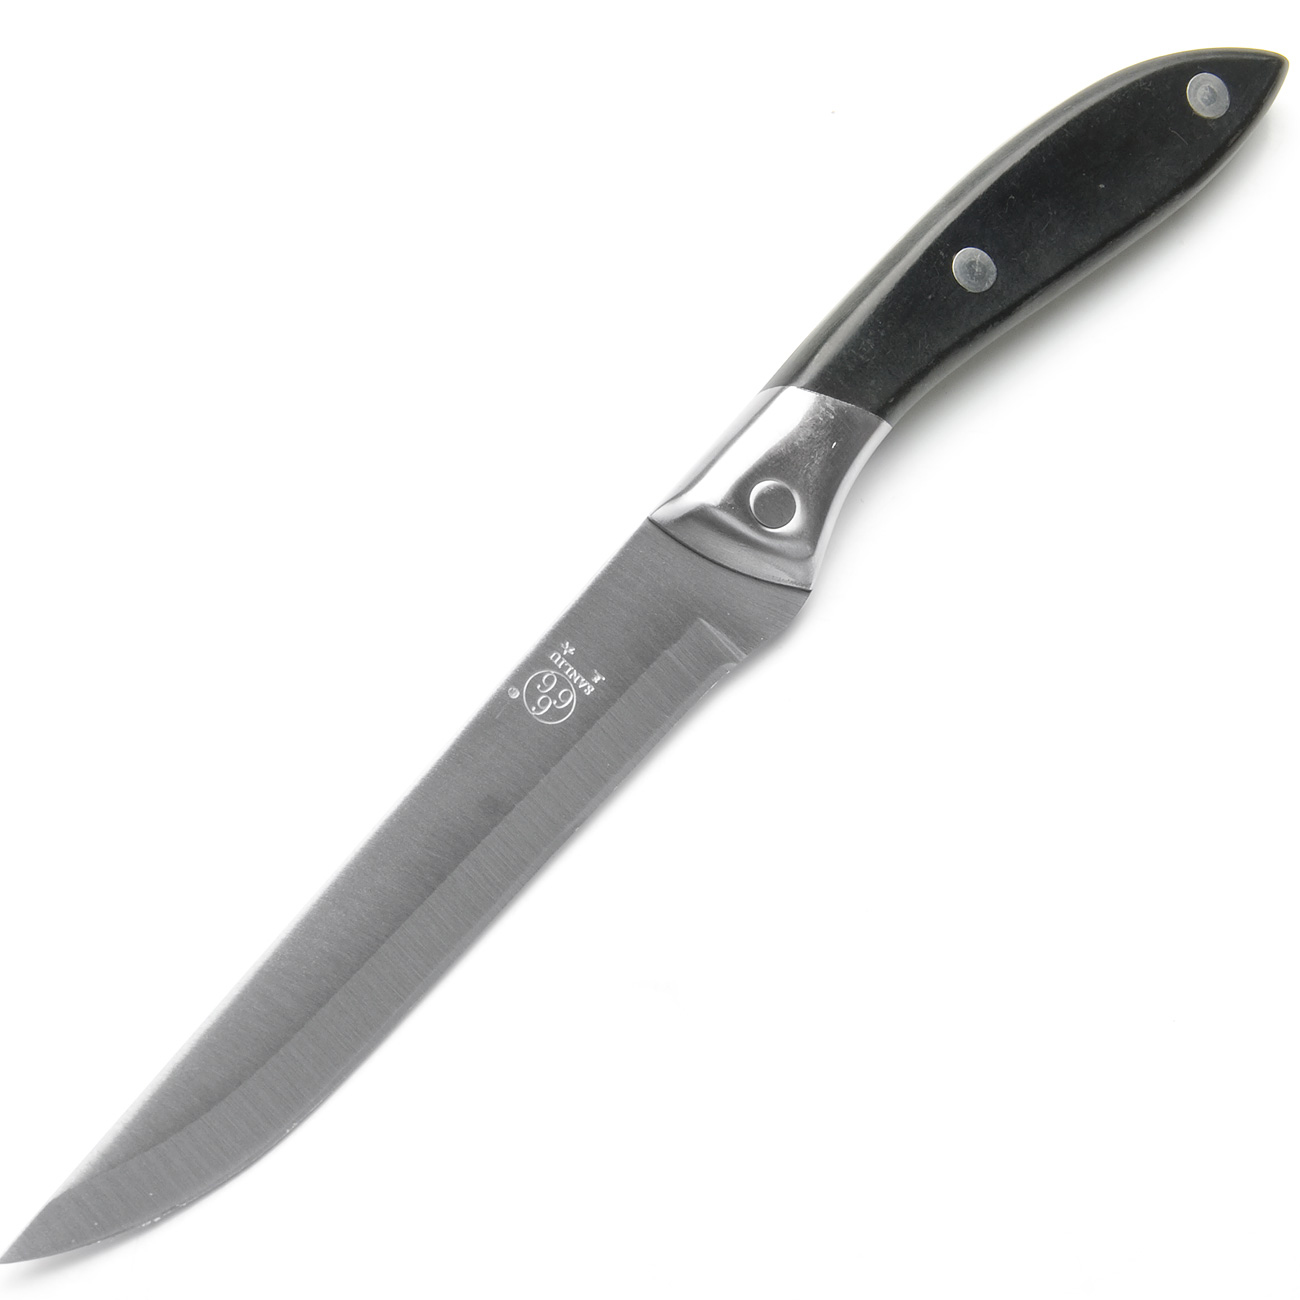 фото Нож универсальный, цвет: серебристый, черный, длина лезвия 14 см Sanliu 666